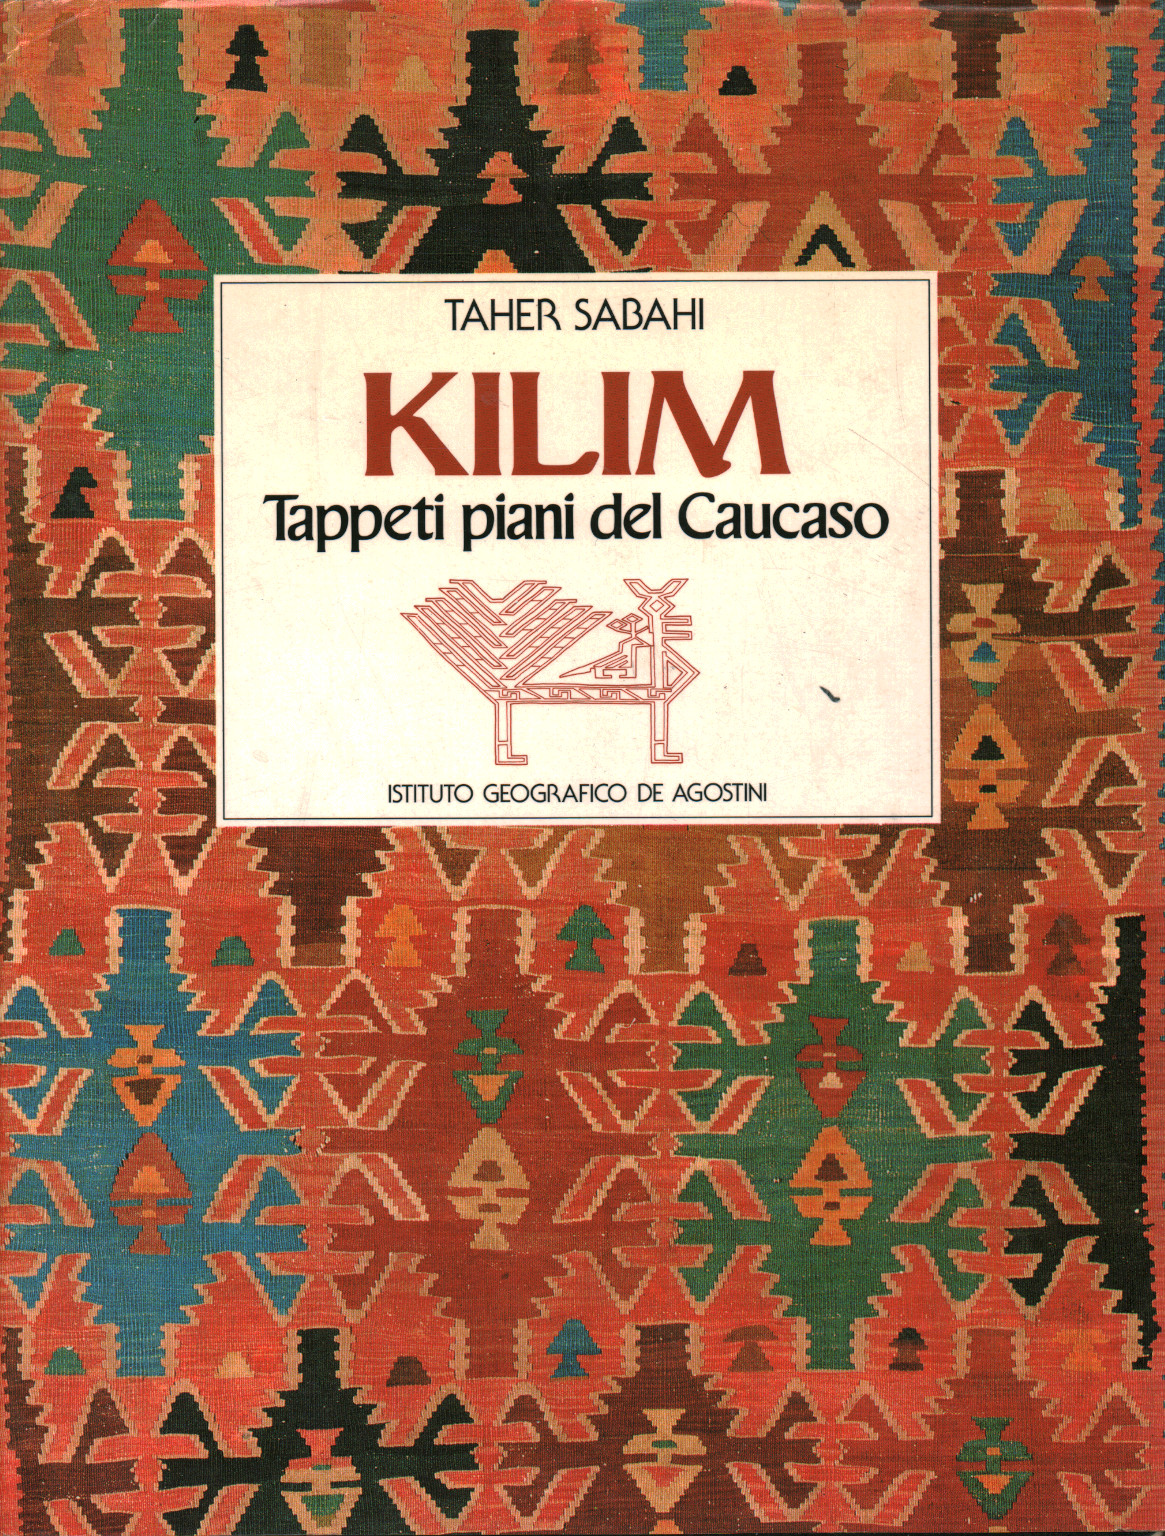 Kilim. Tappeti piani del Caucaso, s.a.